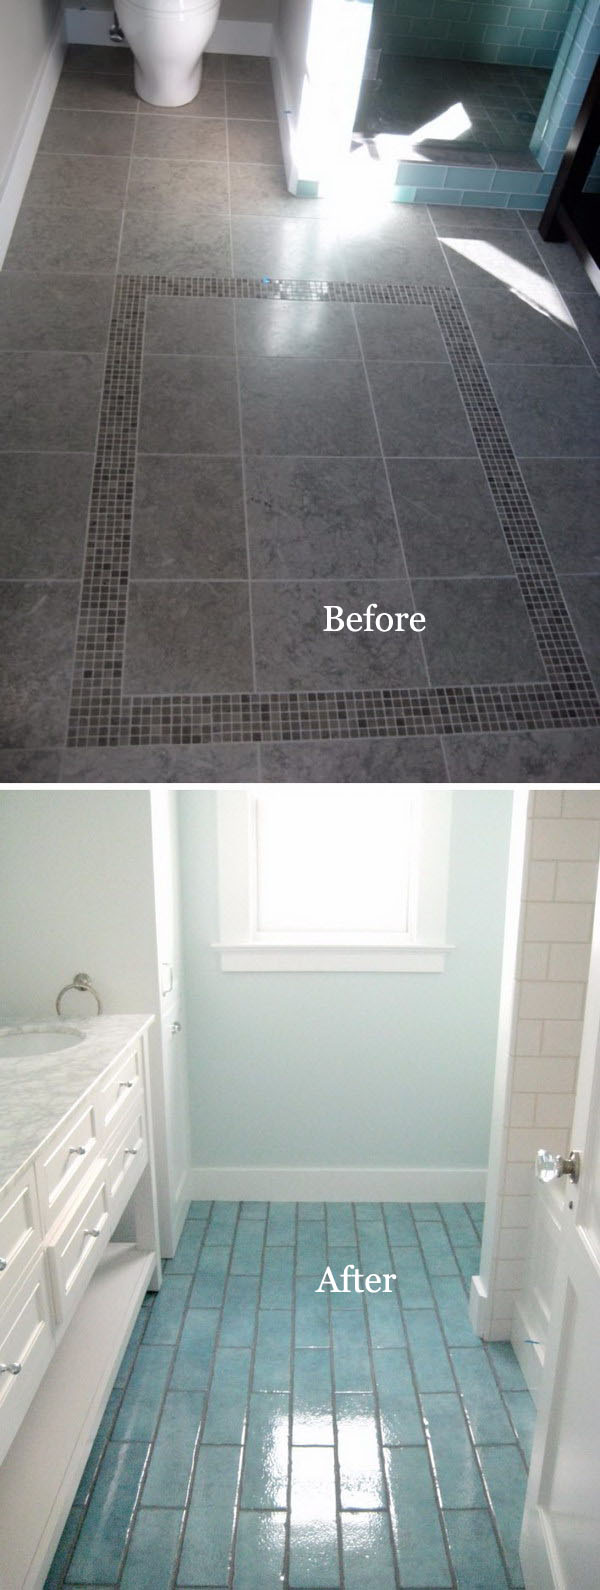 DIY Bathroom Flooring Remodel Using Aqua Blue Tiles. 